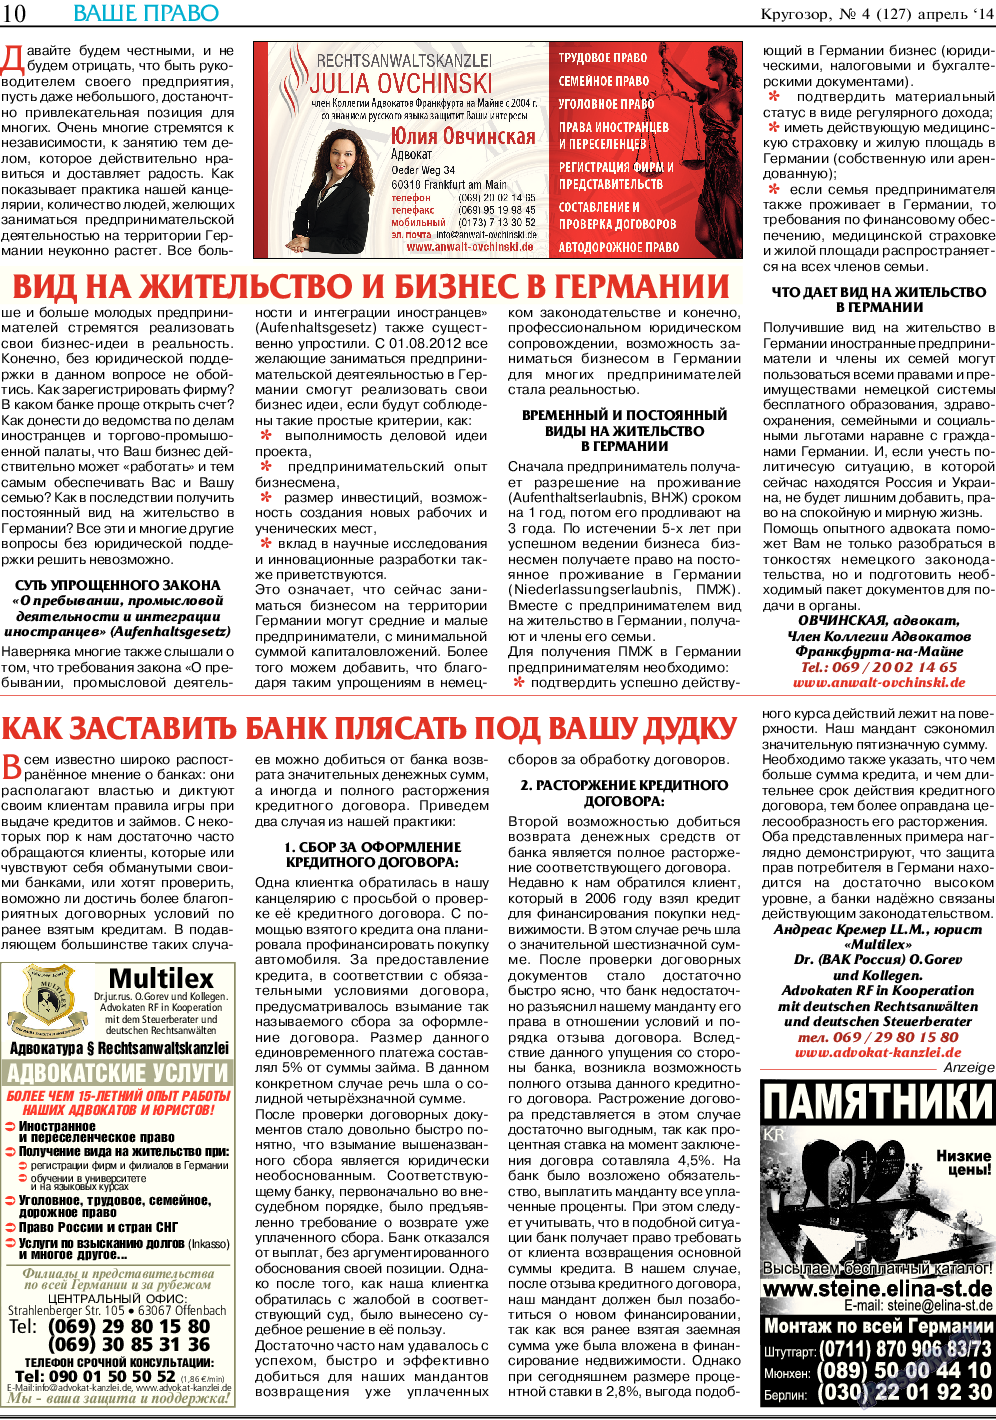 Кругозор (газета). 2014 год, номер 4, стр. 10